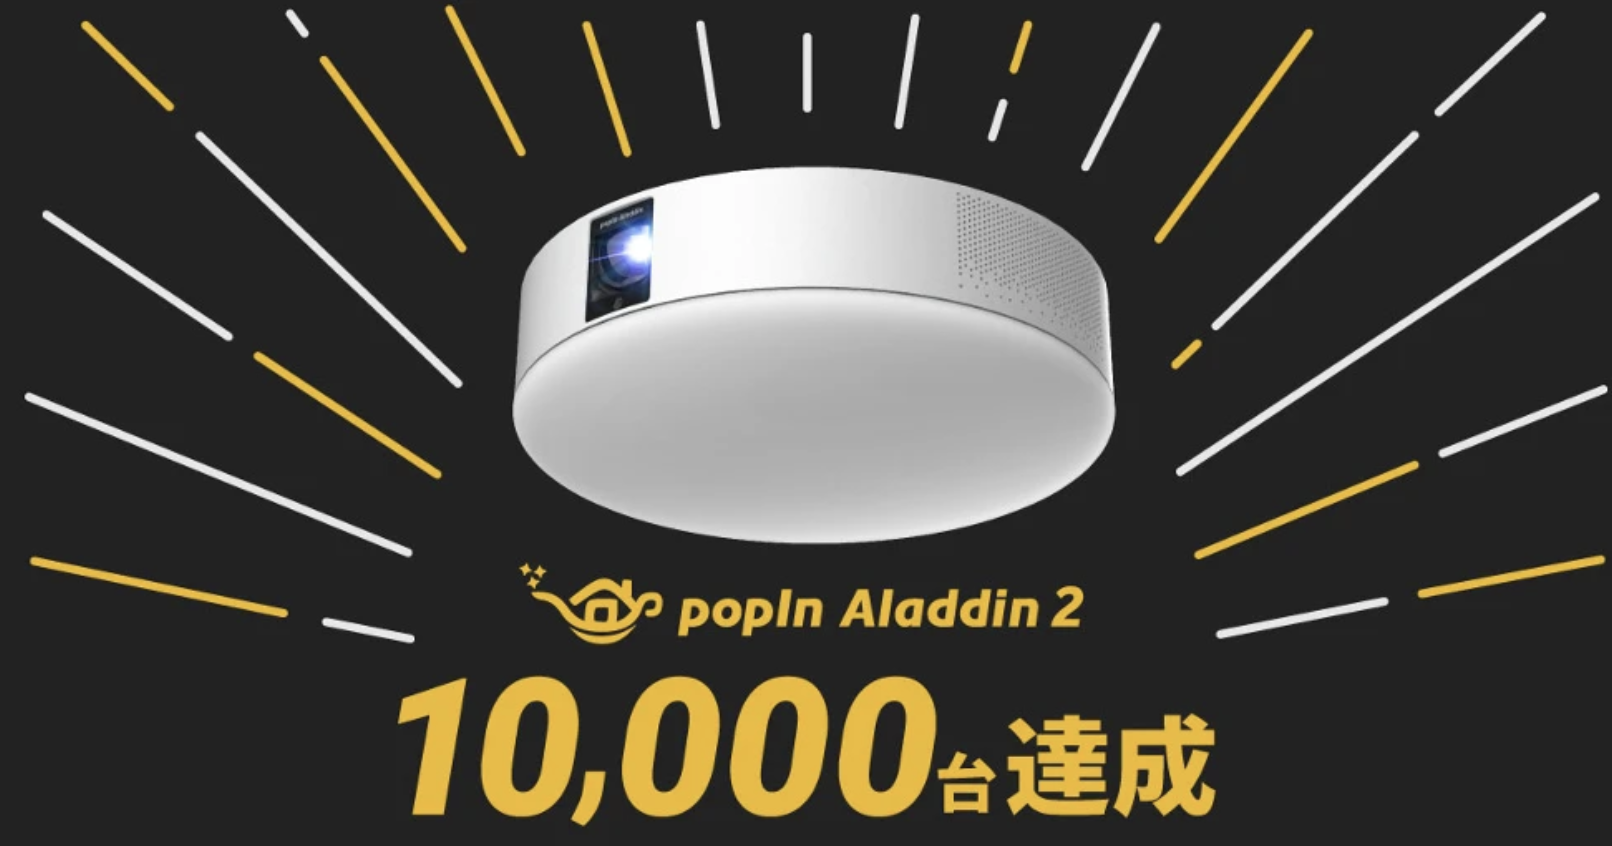 新モデル「popIn Aladdin2」、 先行予約開始後1ヶ月で10,000台完売！ - popIn